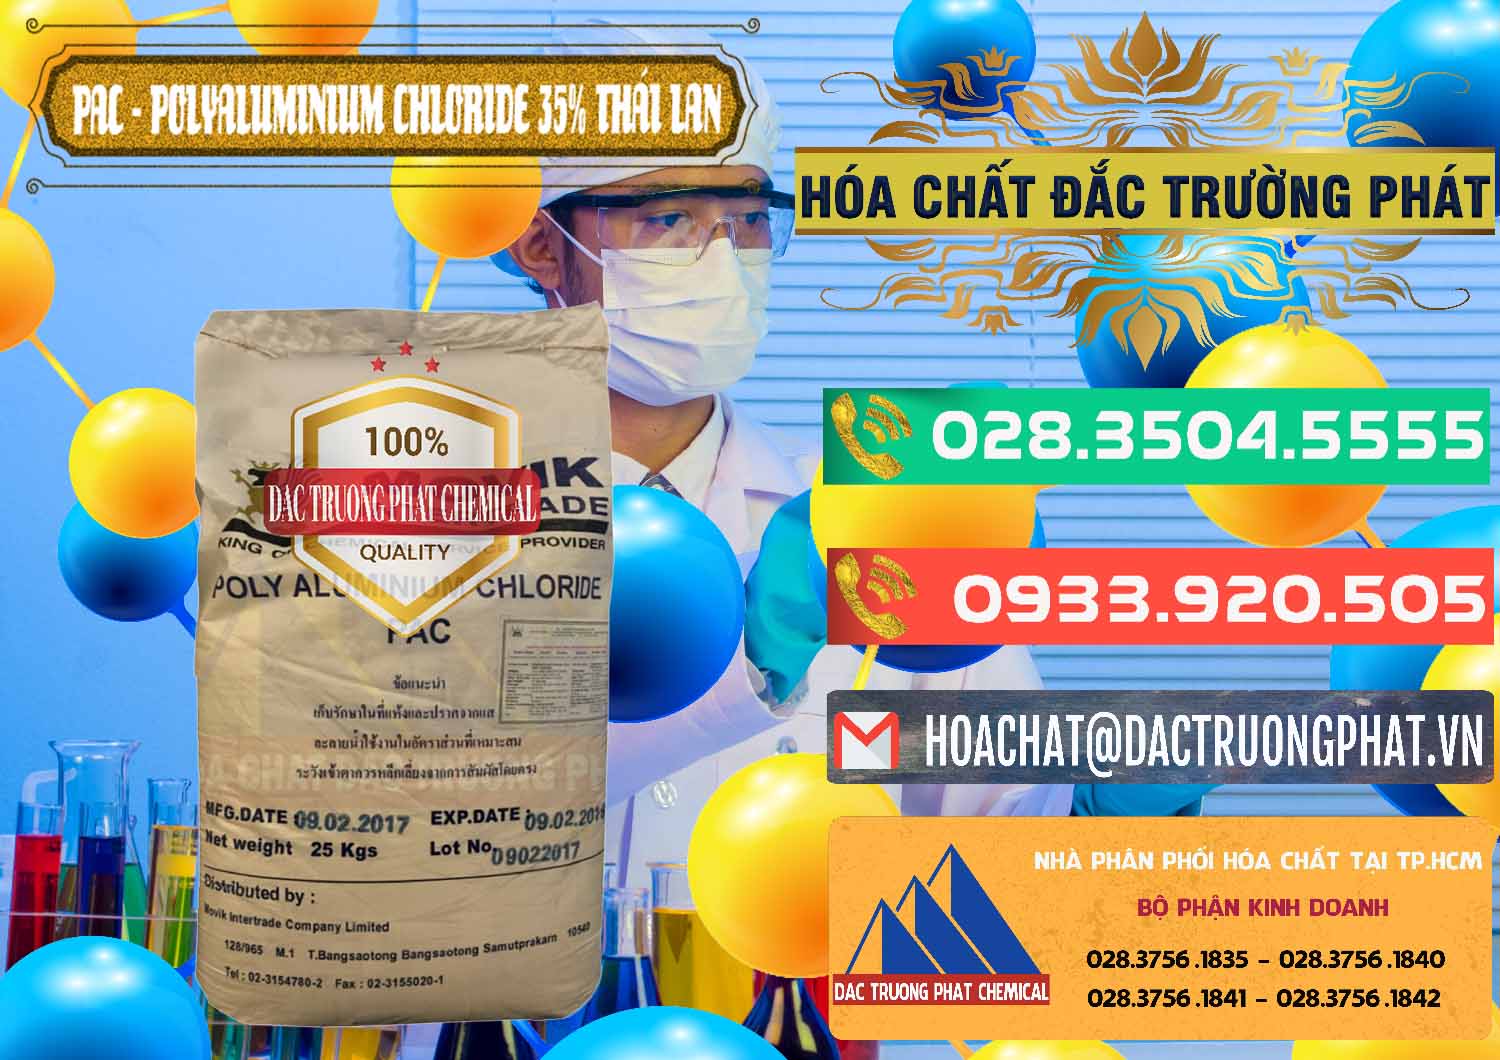 Chuyên cung cấp - bán PAC - Polyaluminium Chloride 35% Thái Lan Thailand - 0470 - Kinh doanh _ phân phối hóa chất tại TP.HCM - congtyhoachat.com.vn